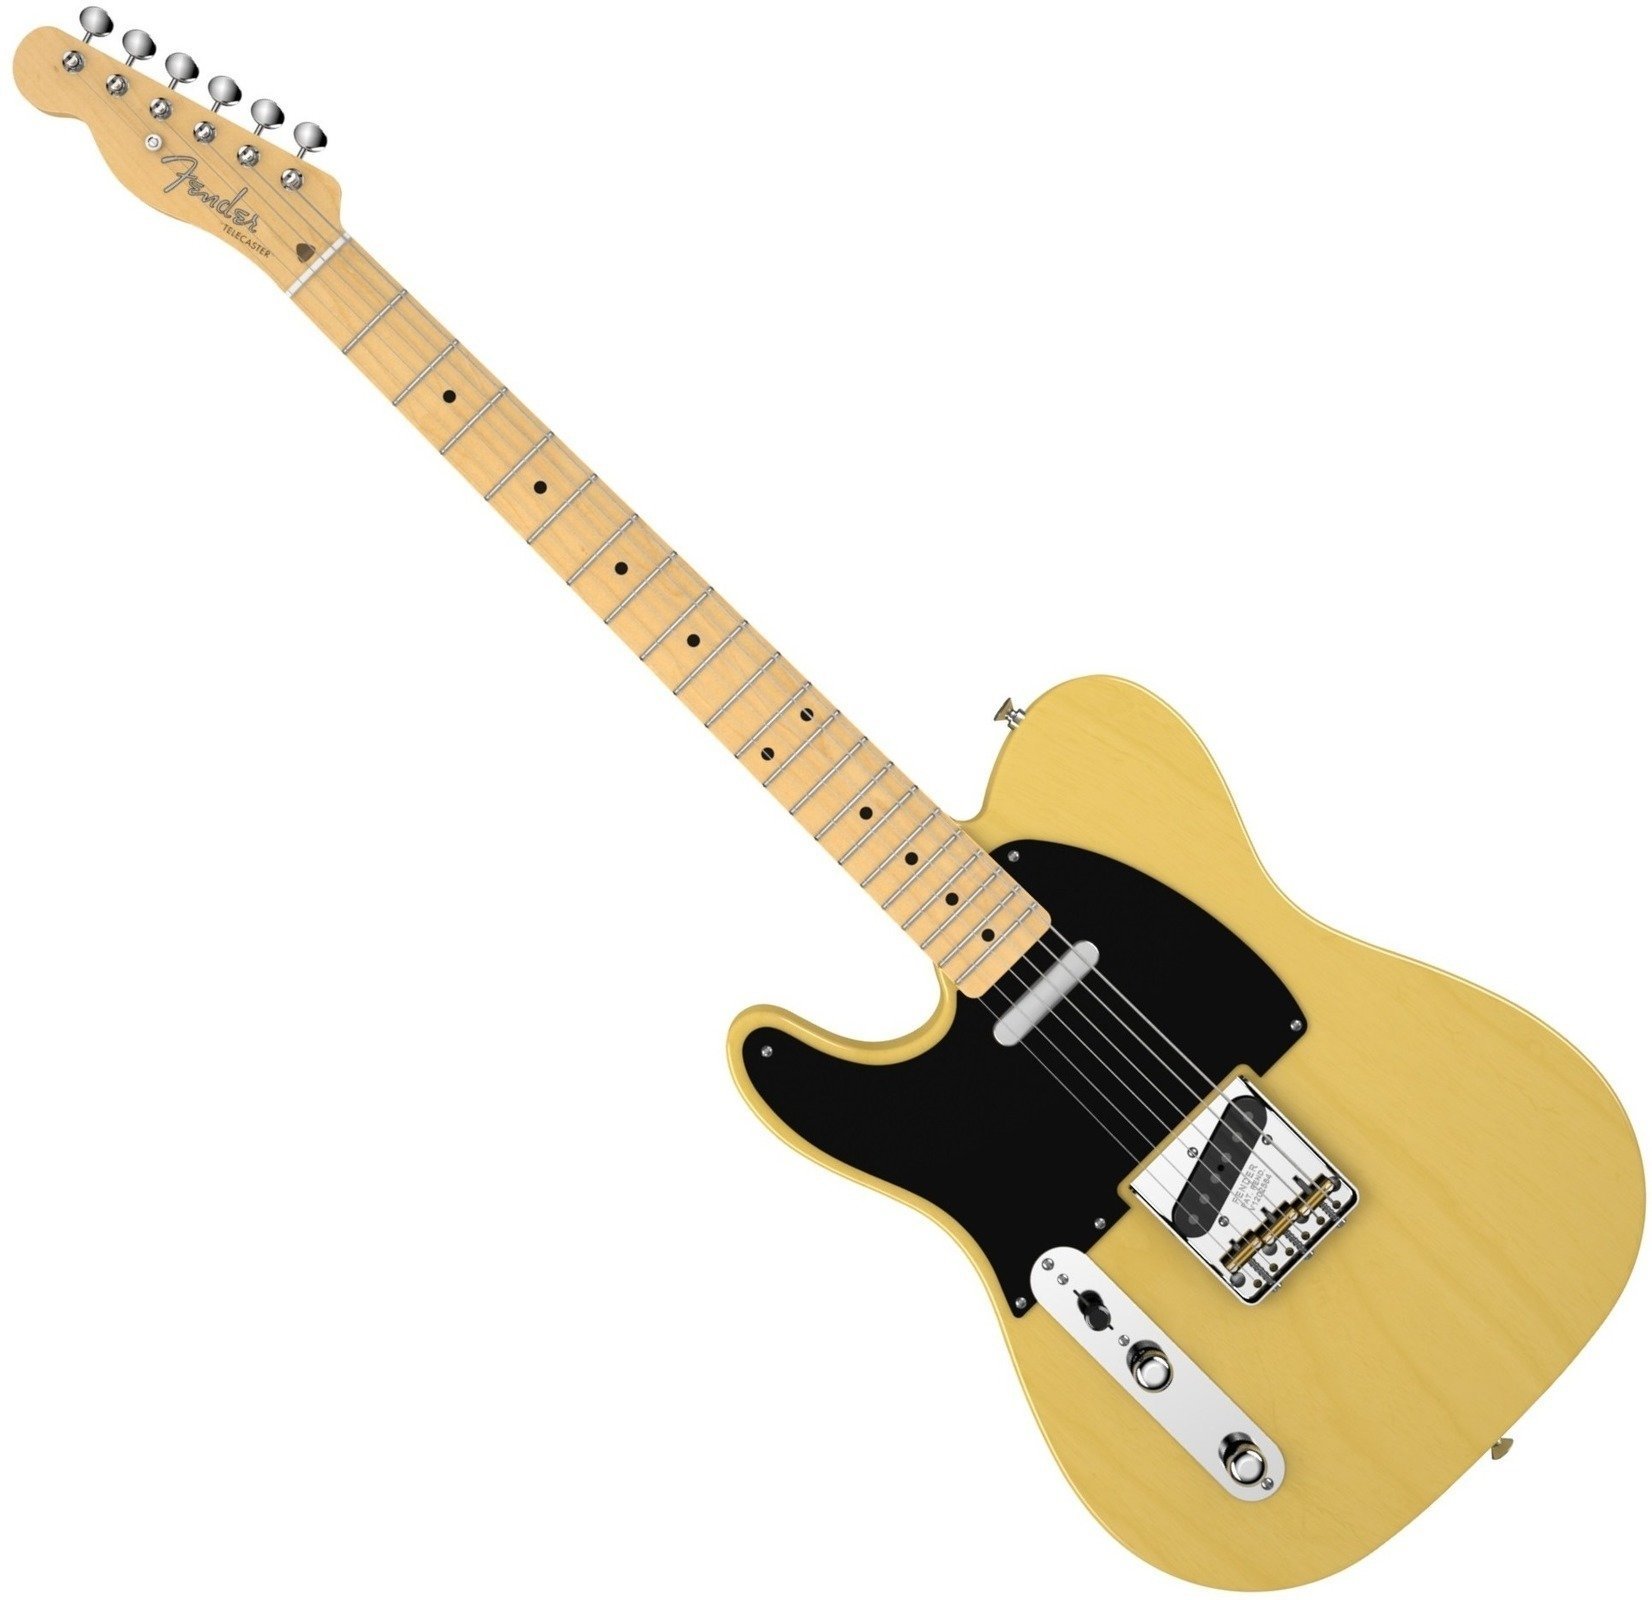 Elektrische gitaar voor linkshandige speler Fender American Vintage '52 Telecaster LeftHanded, Maple Fingerboard, Butterscotch Blonde